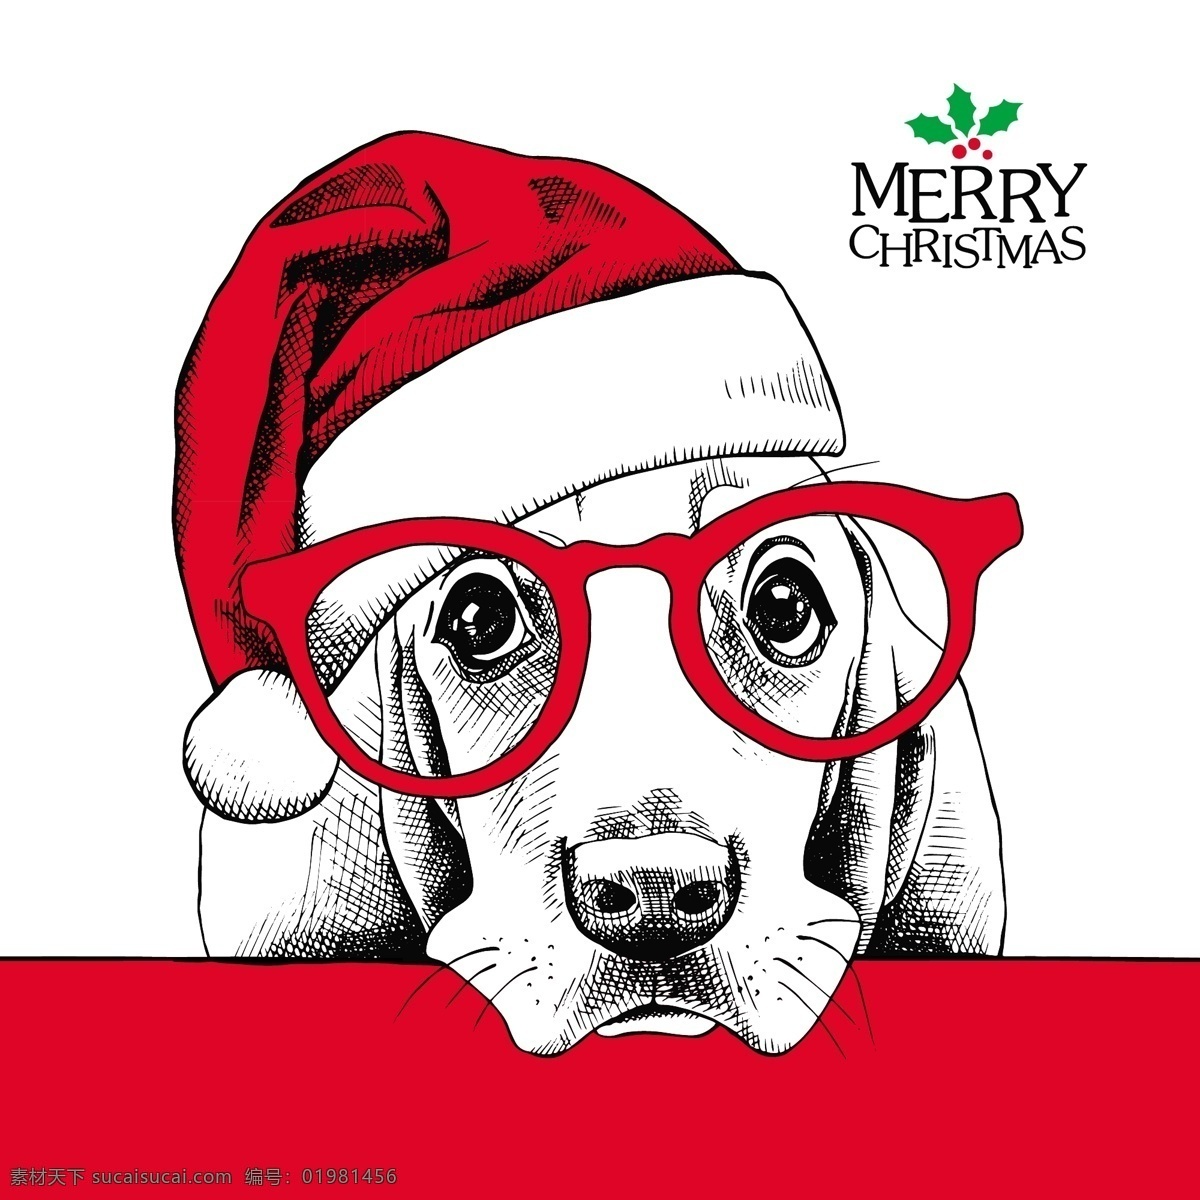 圣诞 帽 狗 可爱 动物 圣诞节 海报 矢量 眼镜 红色 卡通 圣诞节卡片 插画 铅笔画 黑白 圆圈